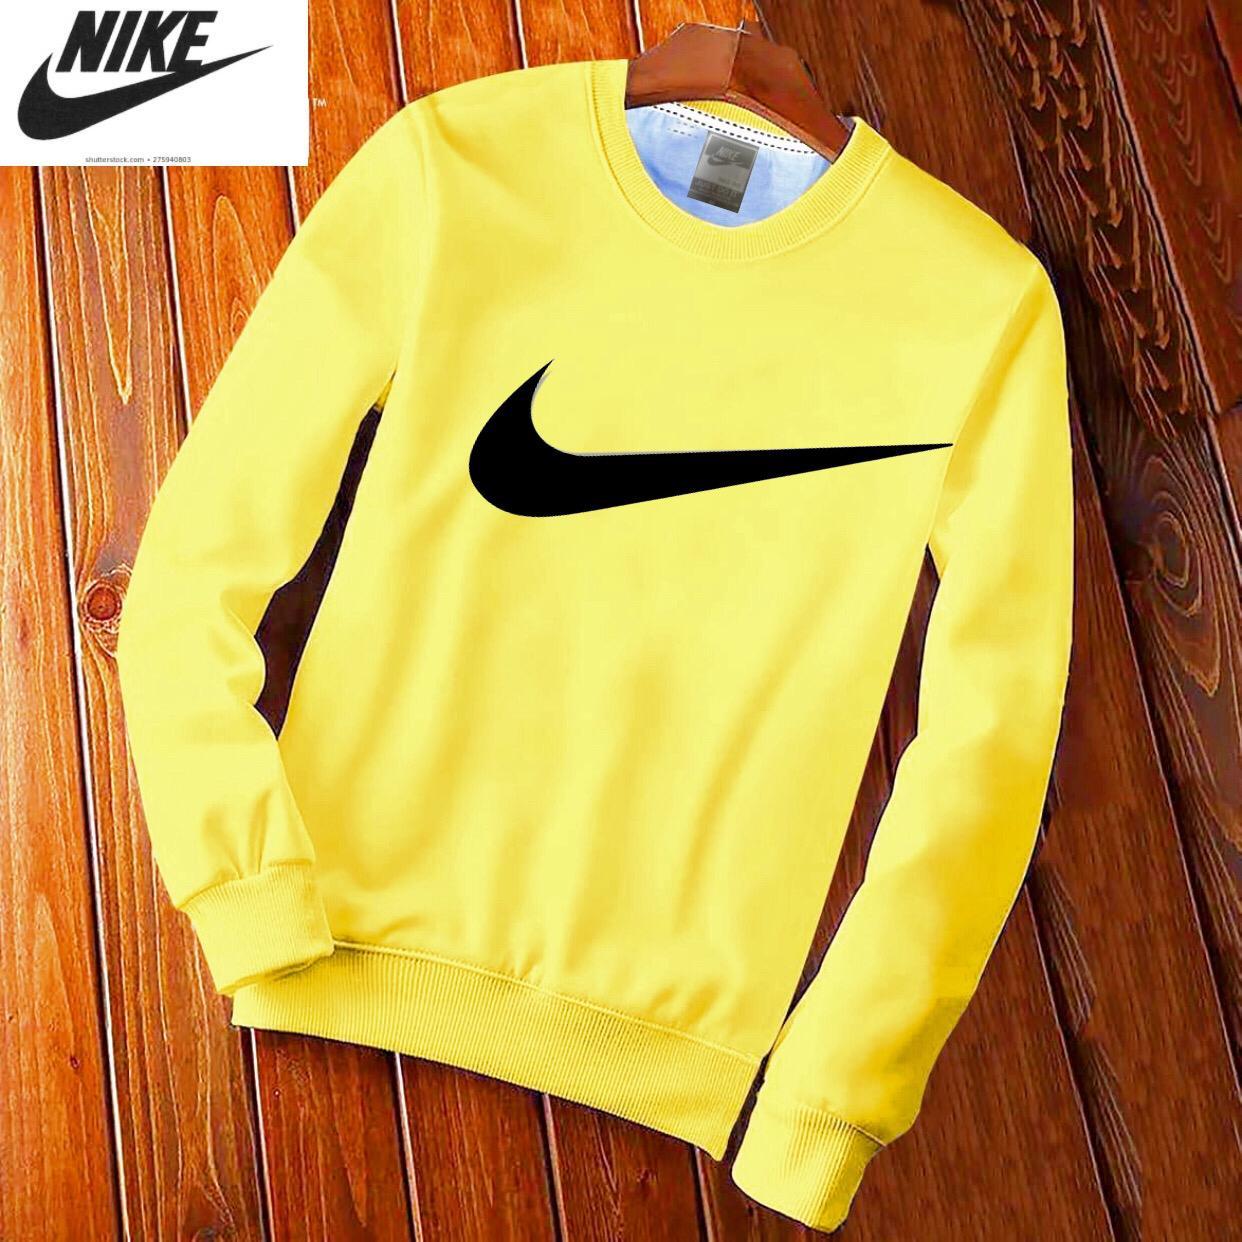 Nike Yellow Sweat Shirts